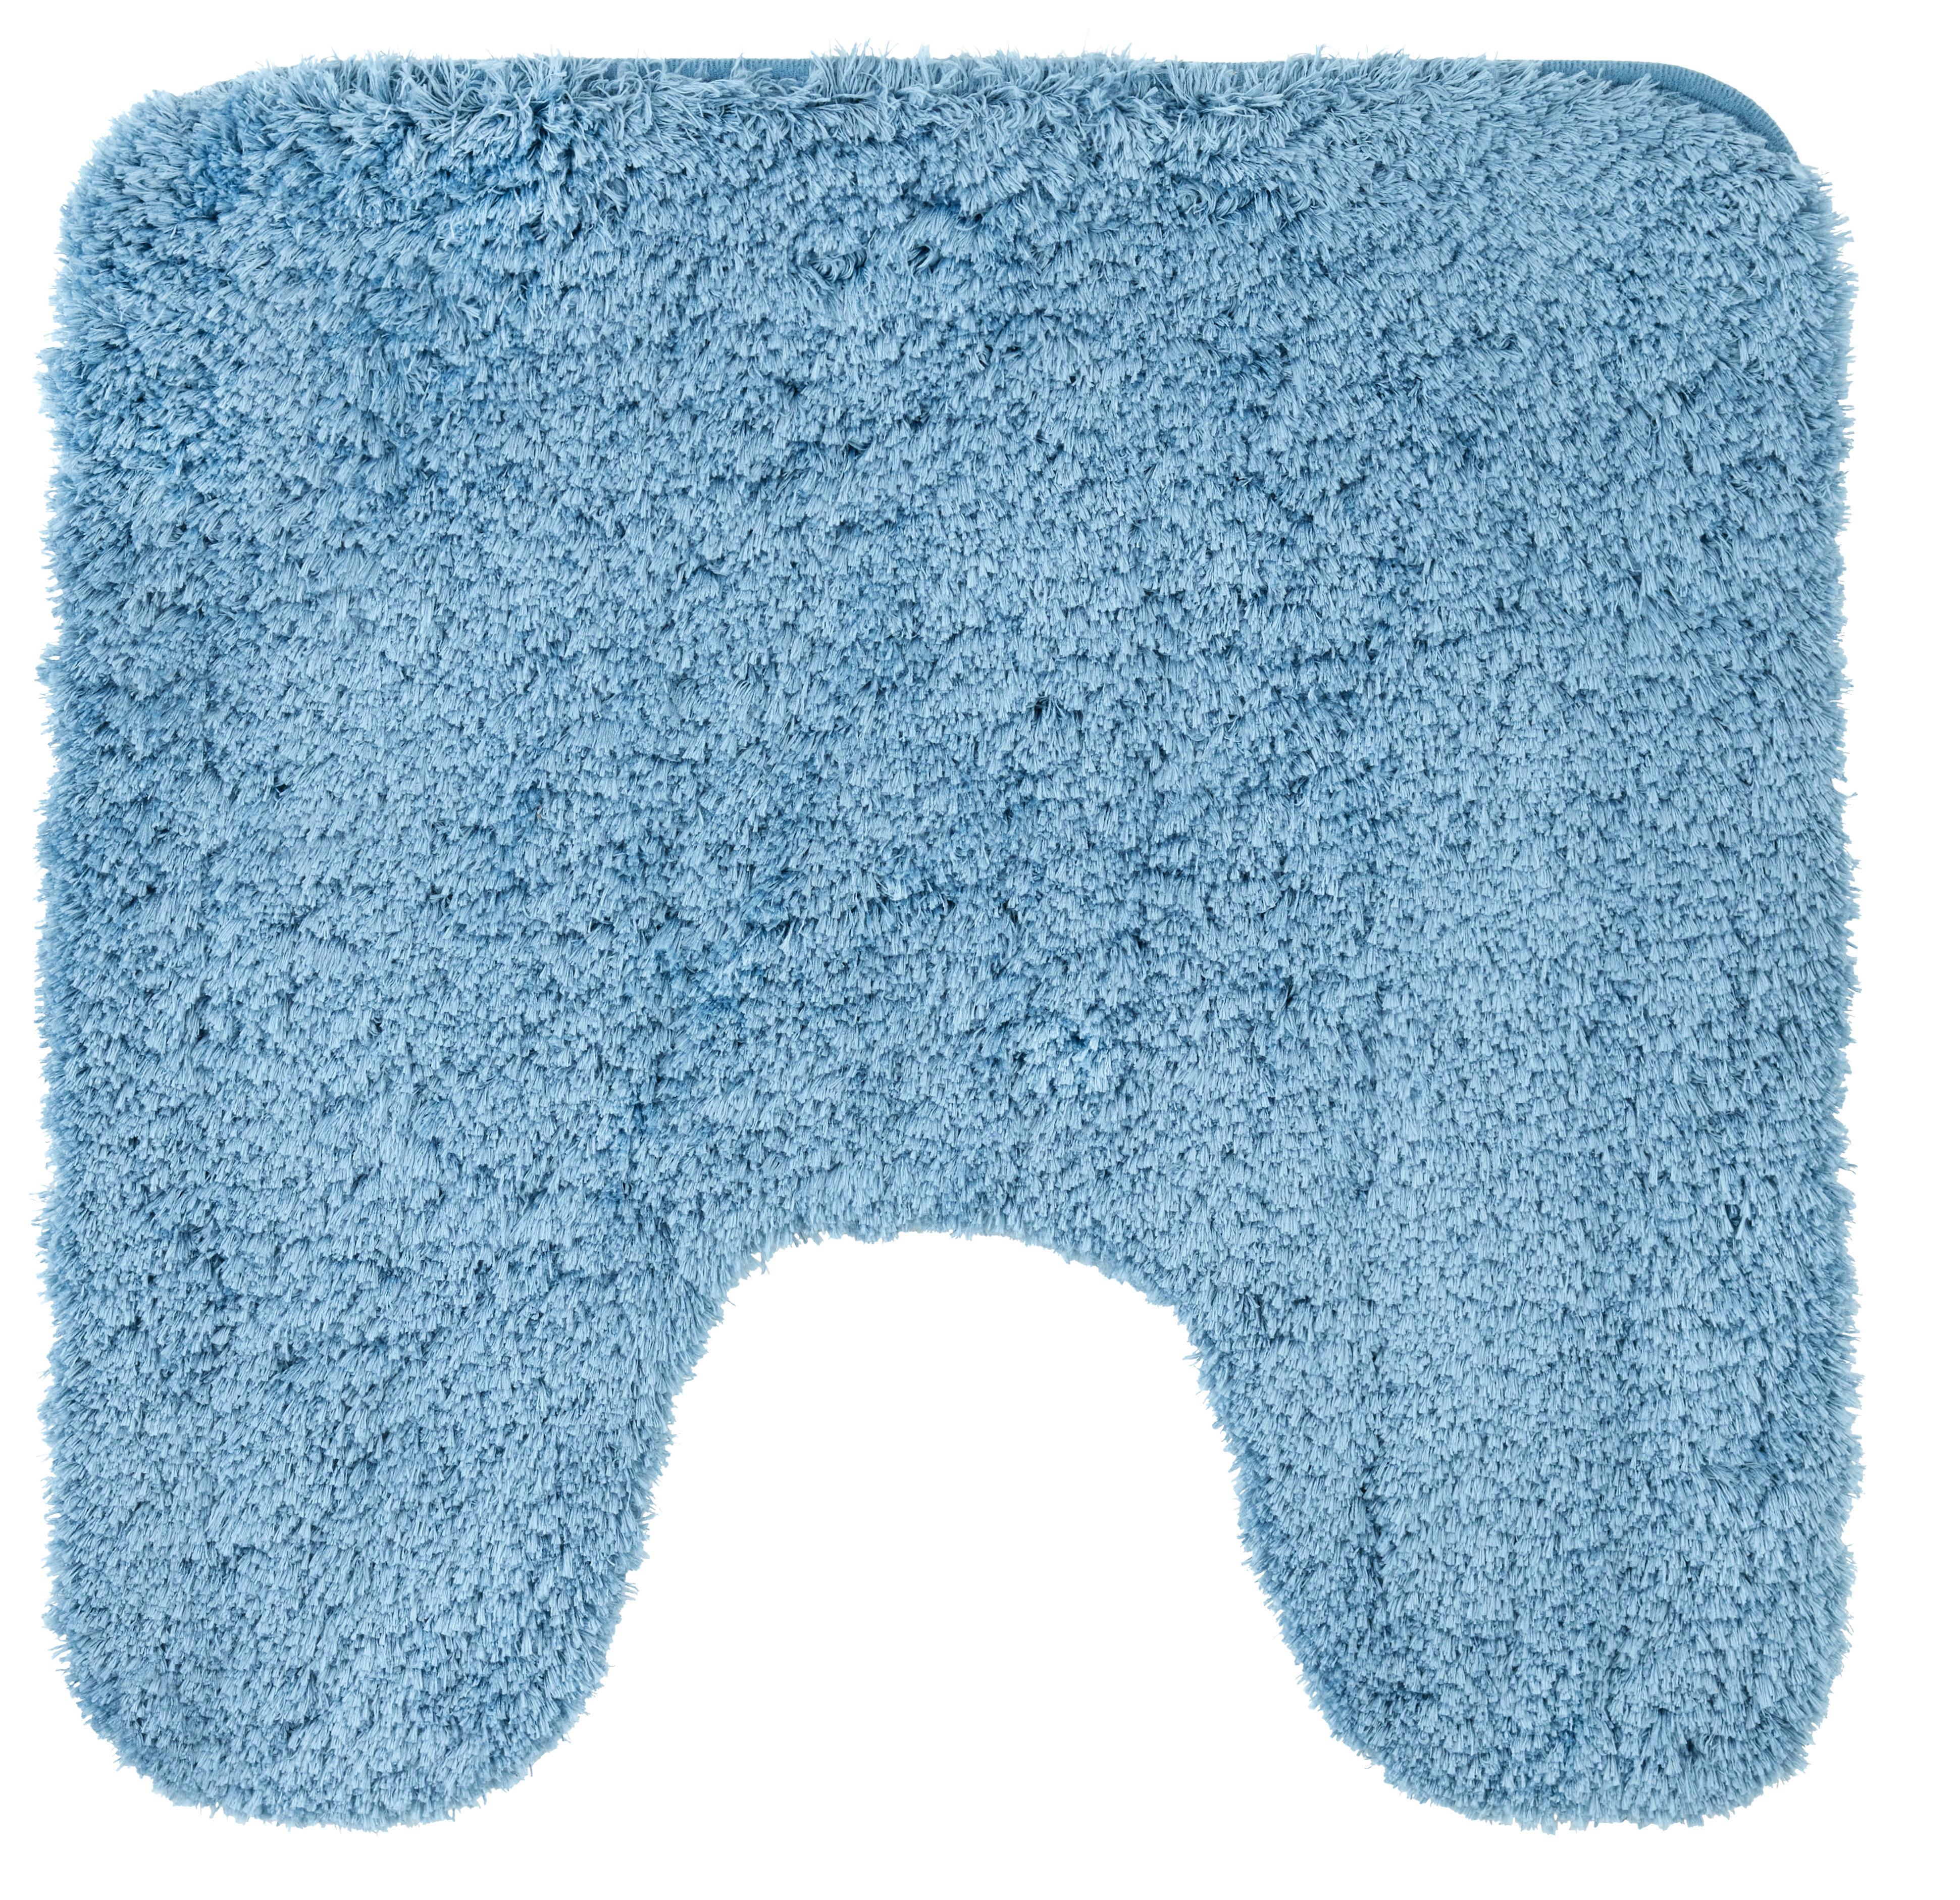 WC-Vorleger Chris in Blau ca. 50x50cm - Blau, Textil (50/50cm) - Premium Living